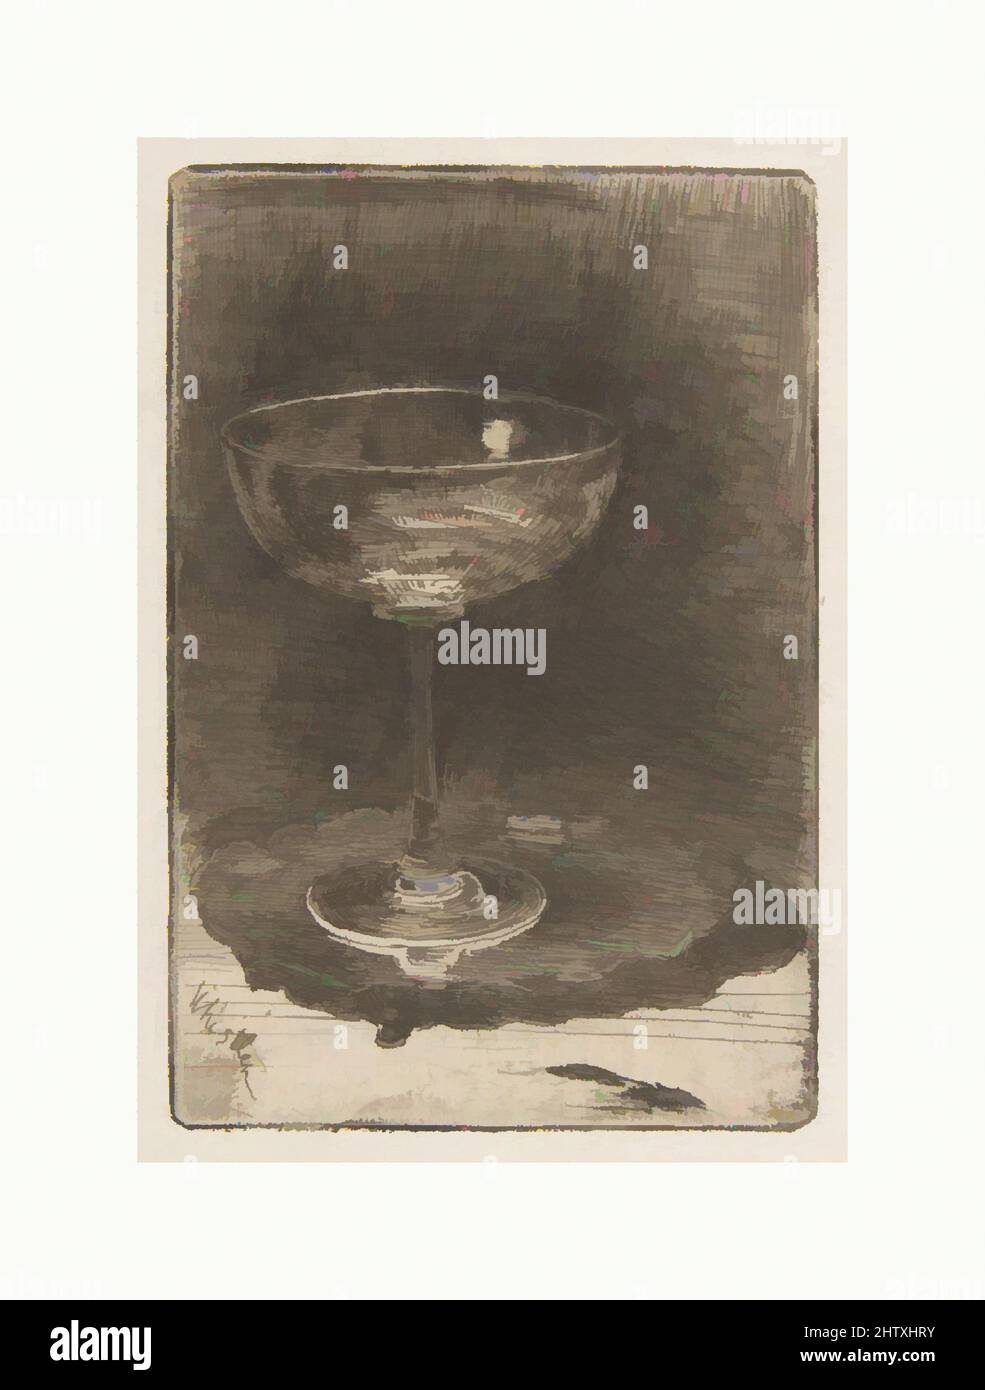 Art Inspired by The Wine Glass, 1858, Etching; secondo stato di due (Glasgow); inchiostro nero-marrone scuro su tessuto fibroso Giappone, piatto: 3 3/16 x 2 3/16 pollici (8,2 x 5,5 cm), Prints, James McNeill Whistler (American, Lowell, Massachusetts 1834–1903 London, opere classiche modernizzate da Artotop con un tuffo nella modernità. Forme, colore e valore, impatto visivo accattivante sulle emozioni artistiche attraverso la libertà delle opere d'arte in modo contemporaneo. Un messaggio senza tempo che persegue una nuova direzione selvaggiamente creativa. Artisti che si rivolgono al supporto digitale e creano l'NFT Artotop Foto Stock